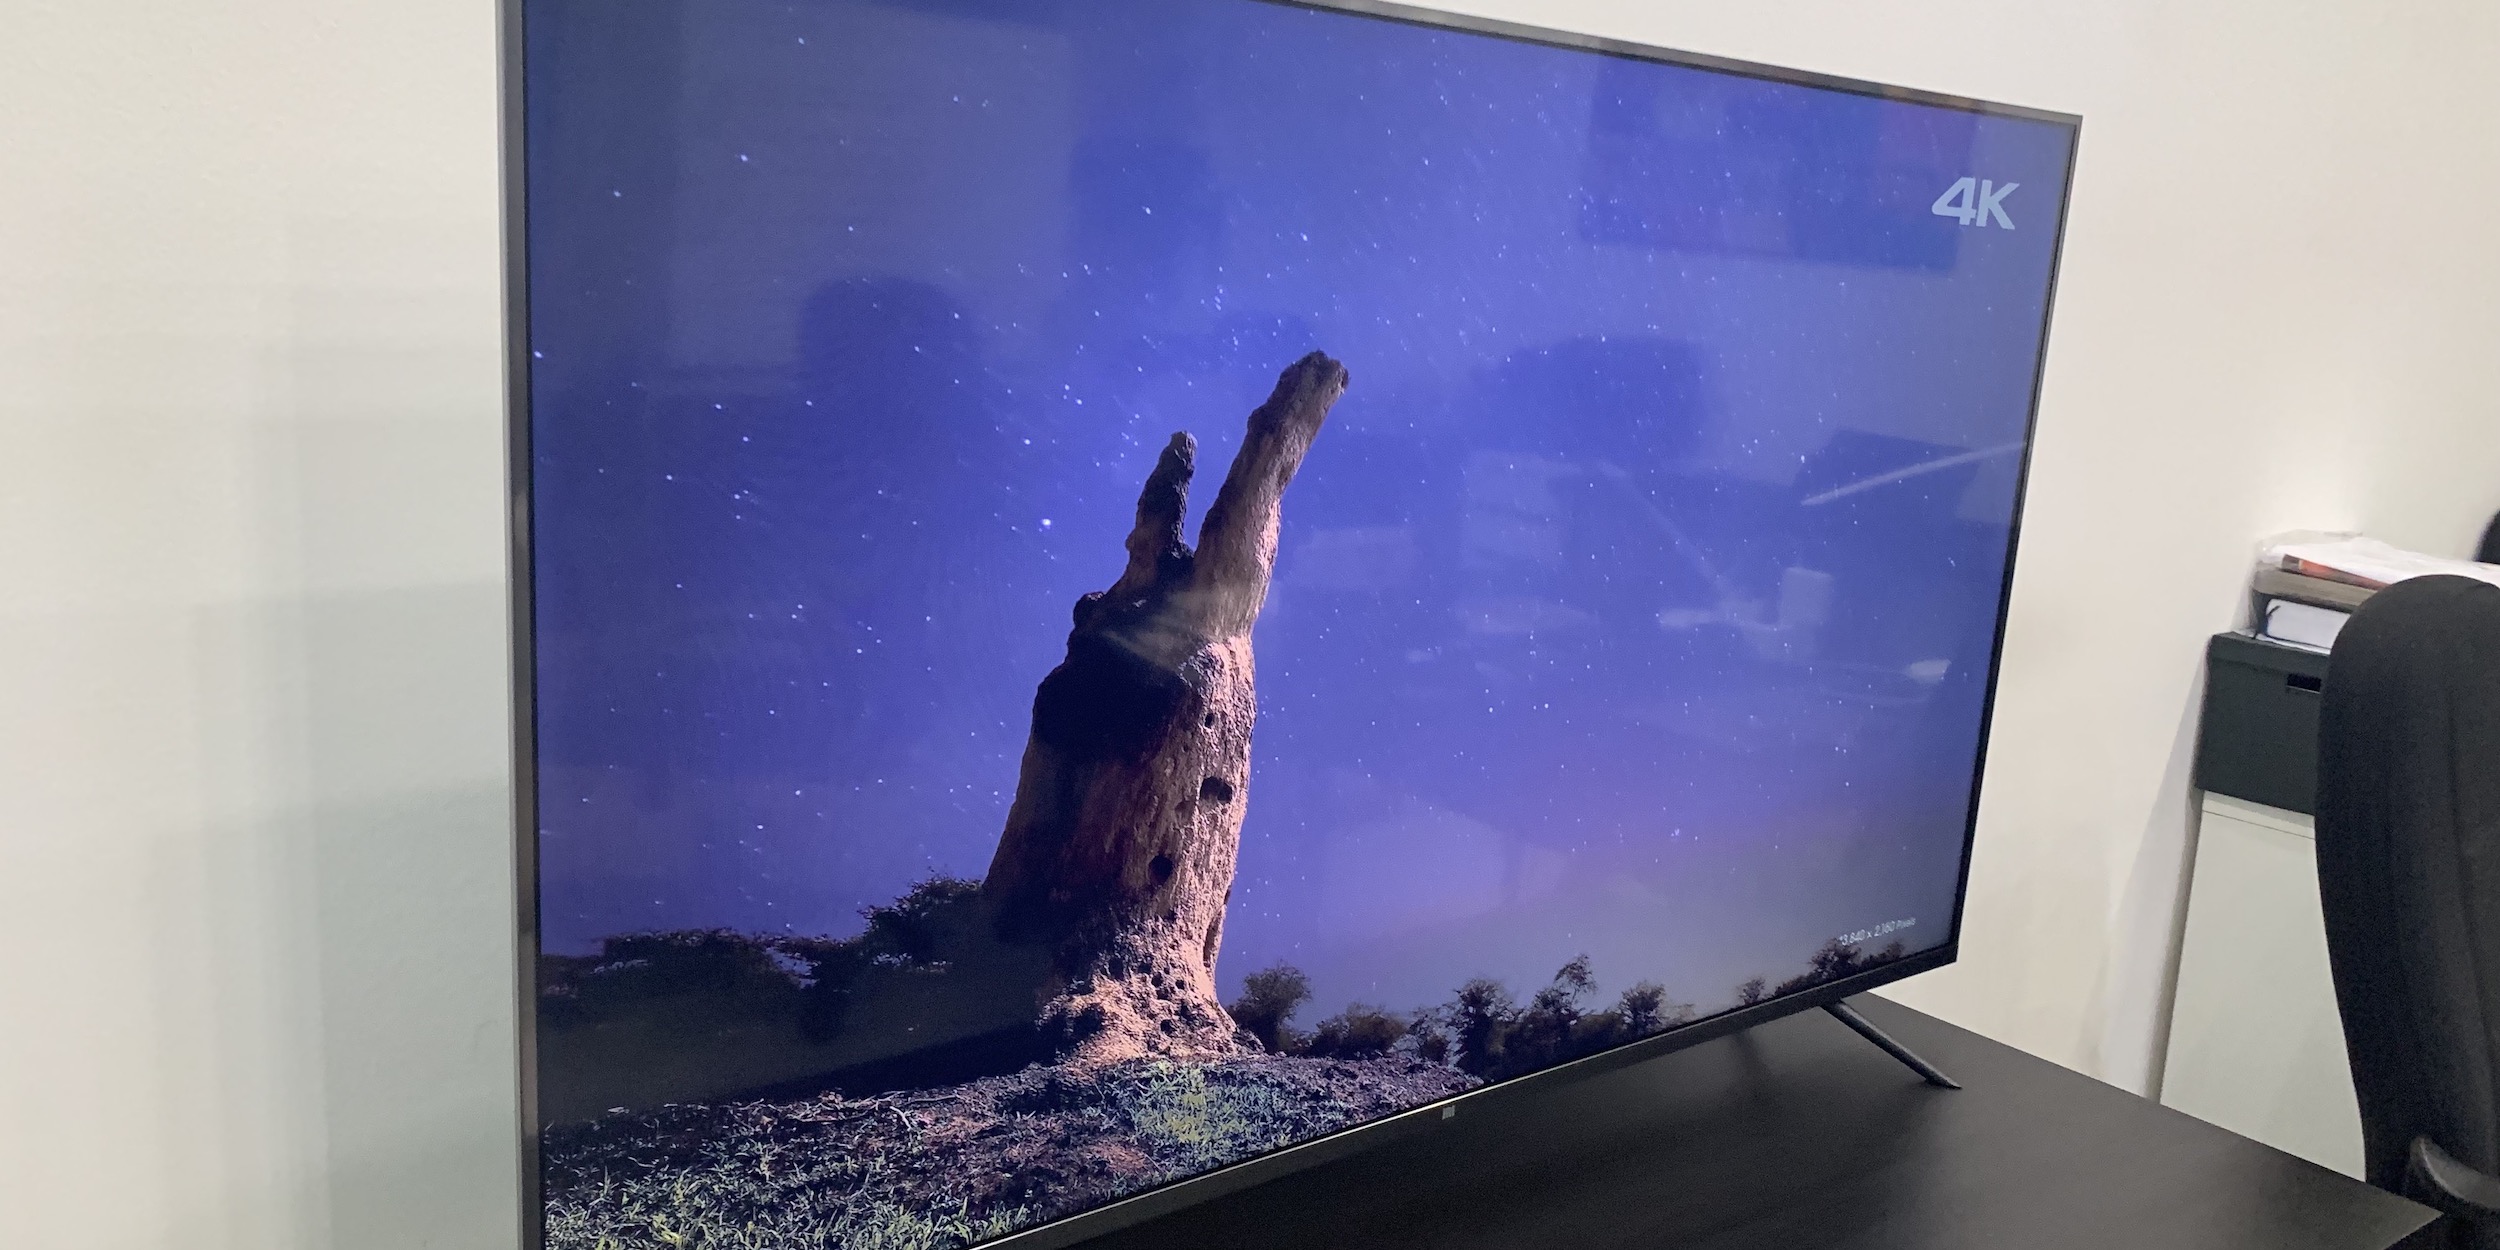 Xiaomi Mi Tv 4s 55 L55m5 5aru